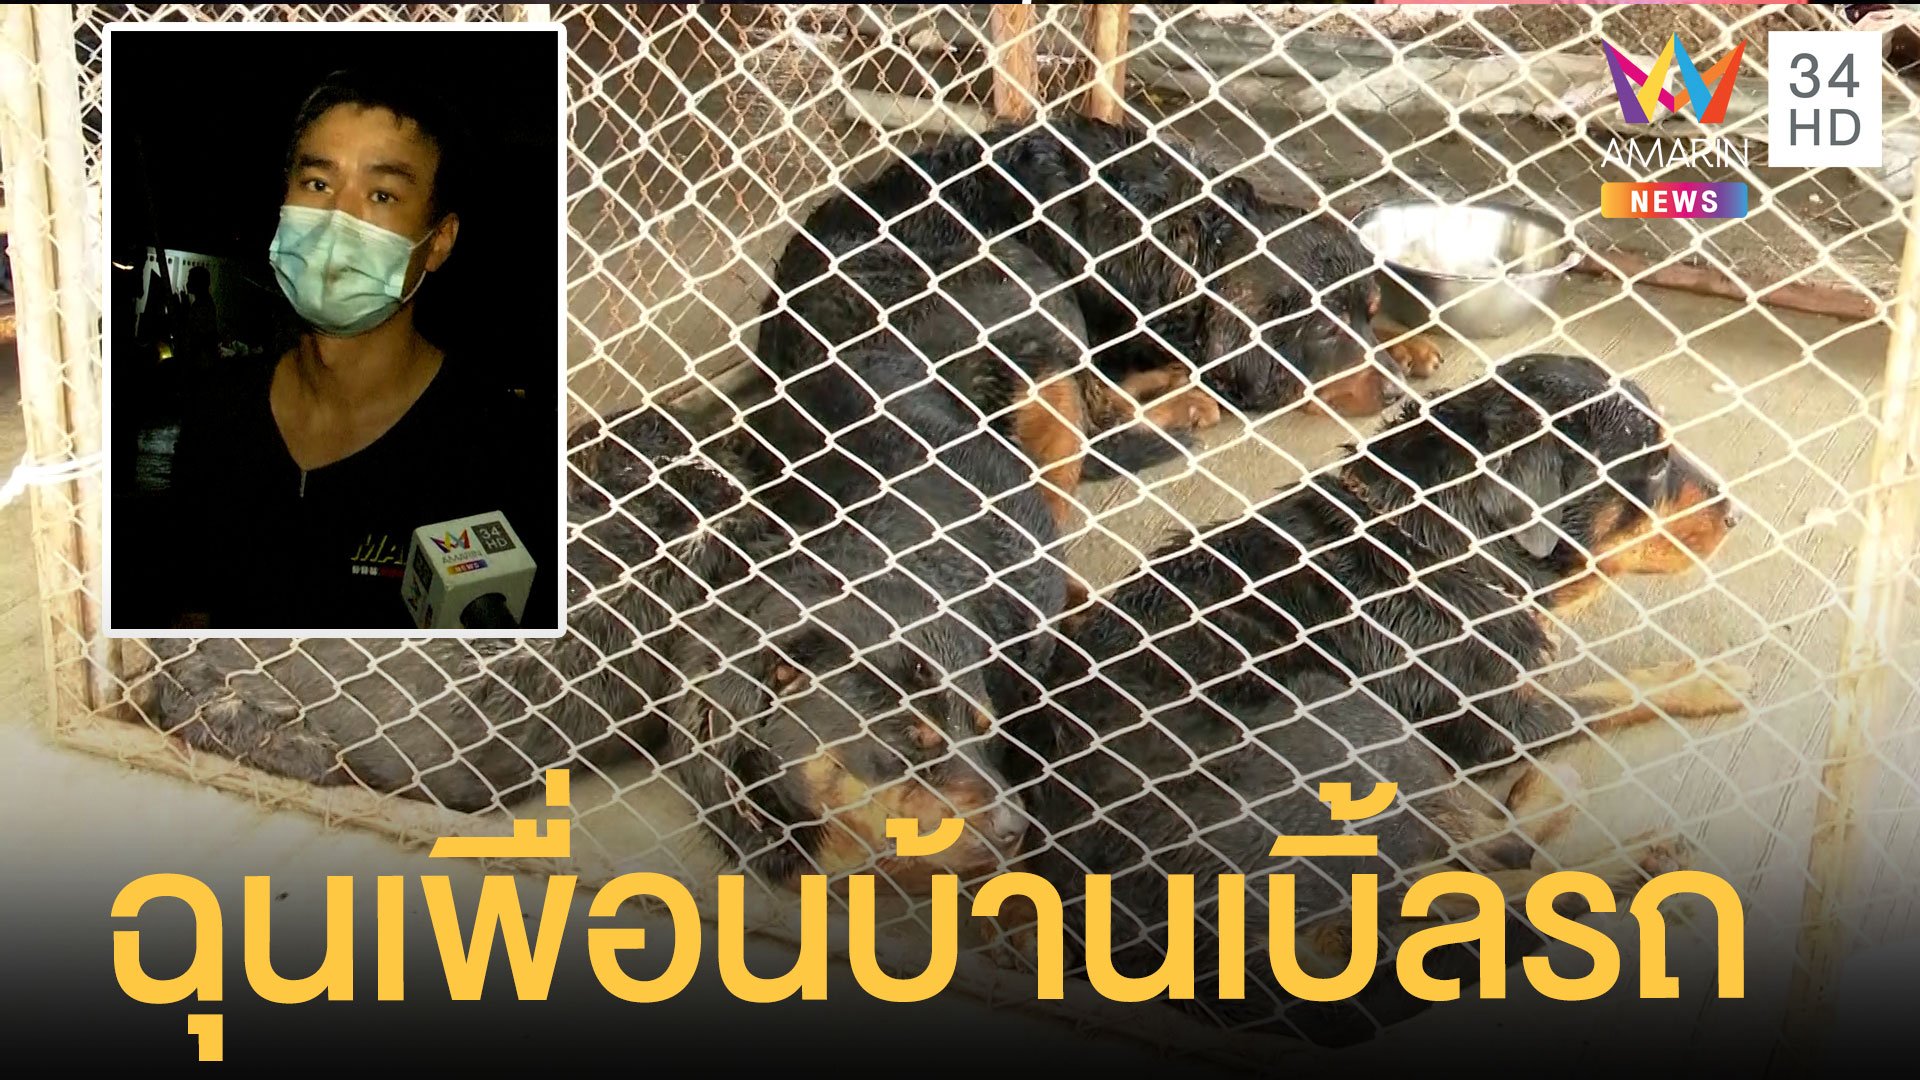 ย้ายแล้ว 4 ร็อตไวเลอร์ เจ้าของรับผิดปล่อยหมาโมโหเพื่อนบ้านเบิ้ลรถ | ข่าวเที่ยงอมรินทร์ | 2 พ.ย. 64 | AMARIN TVHD34